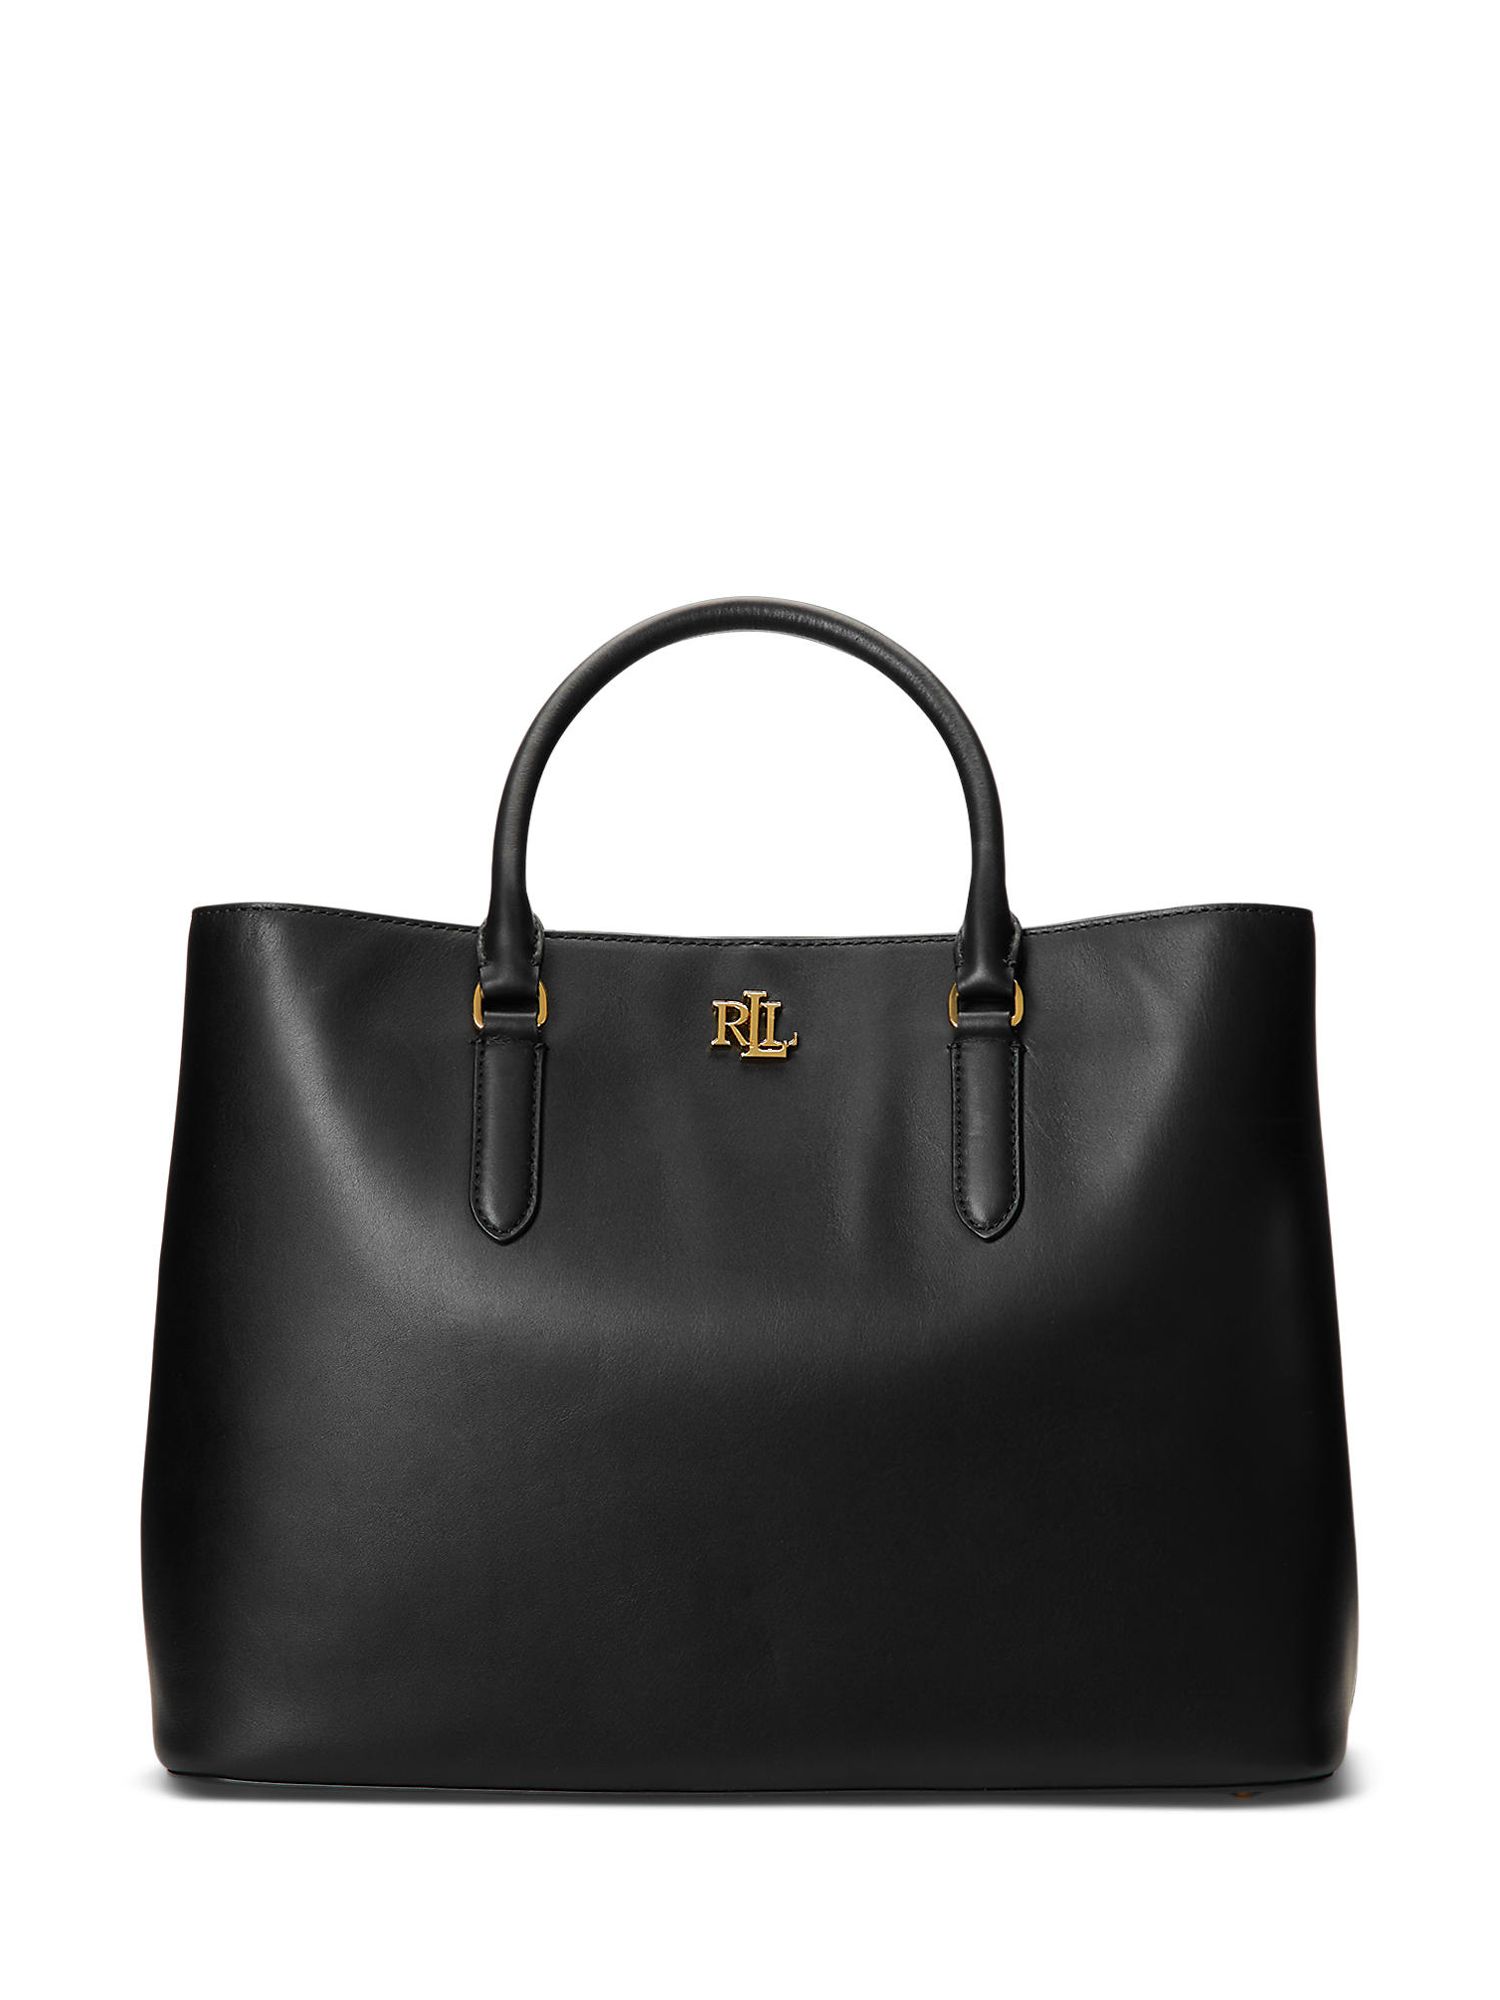 Lauren Ralph Lauren Marcy 36 Leather Satchel Bag, Black at John Lewis &  Partners